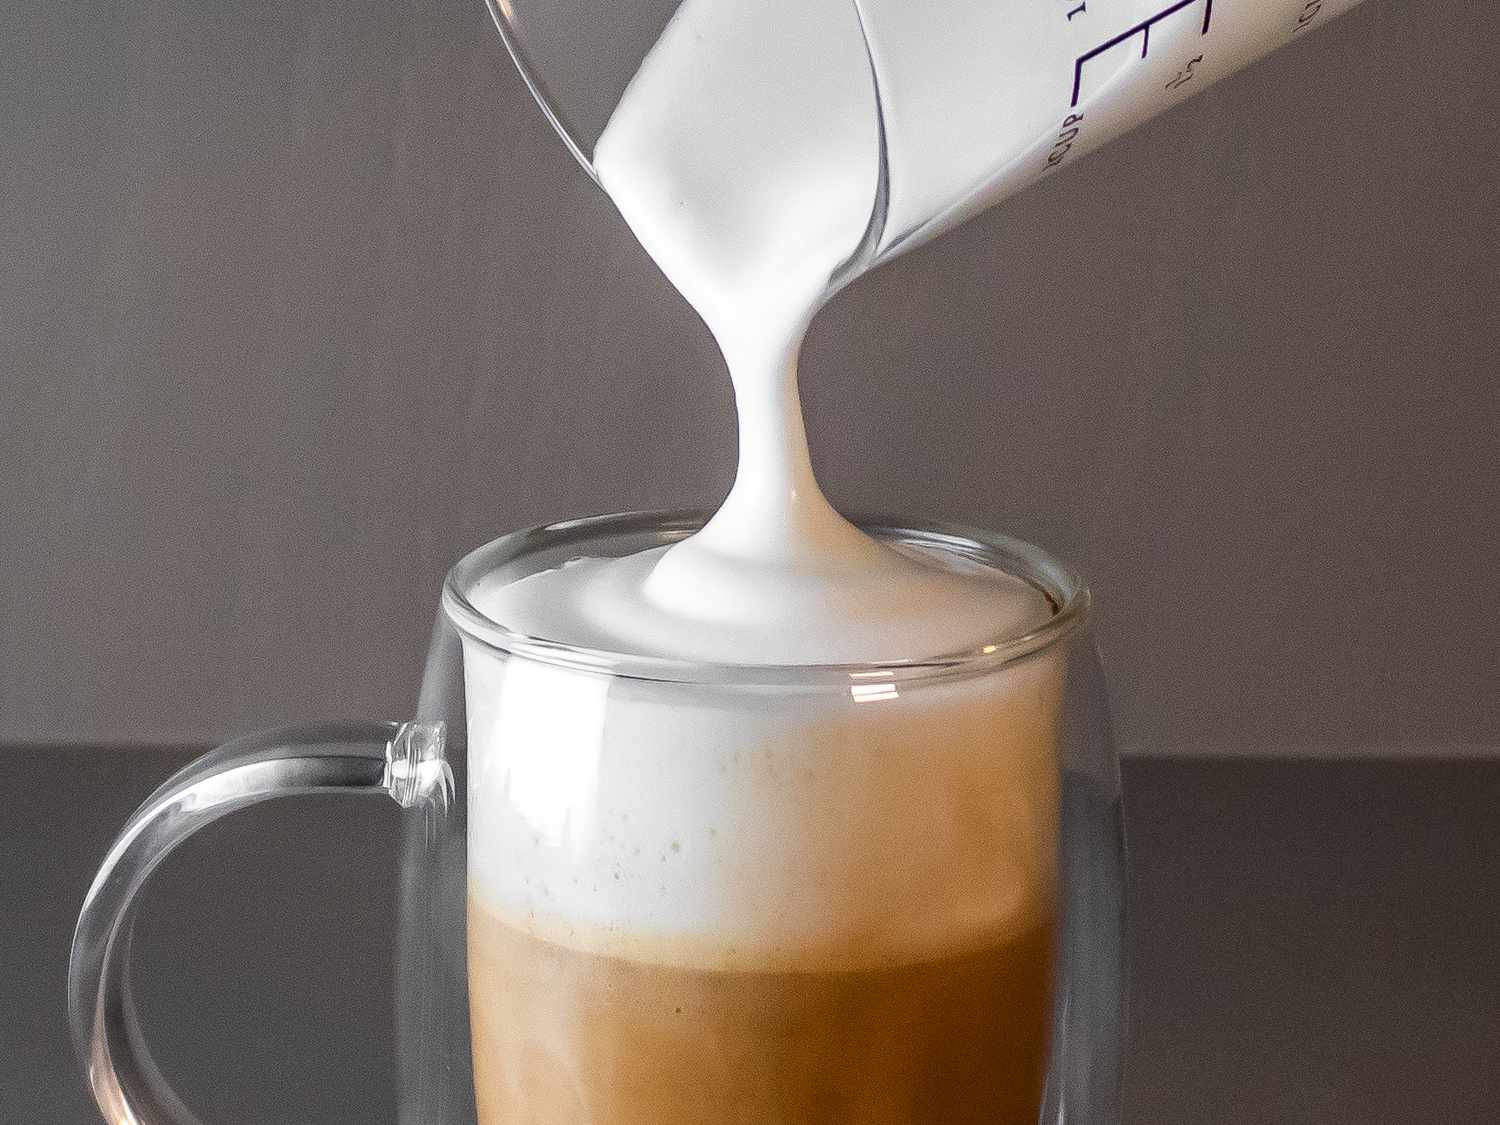 牛奶泡沫被倒进咖啡杯的特写